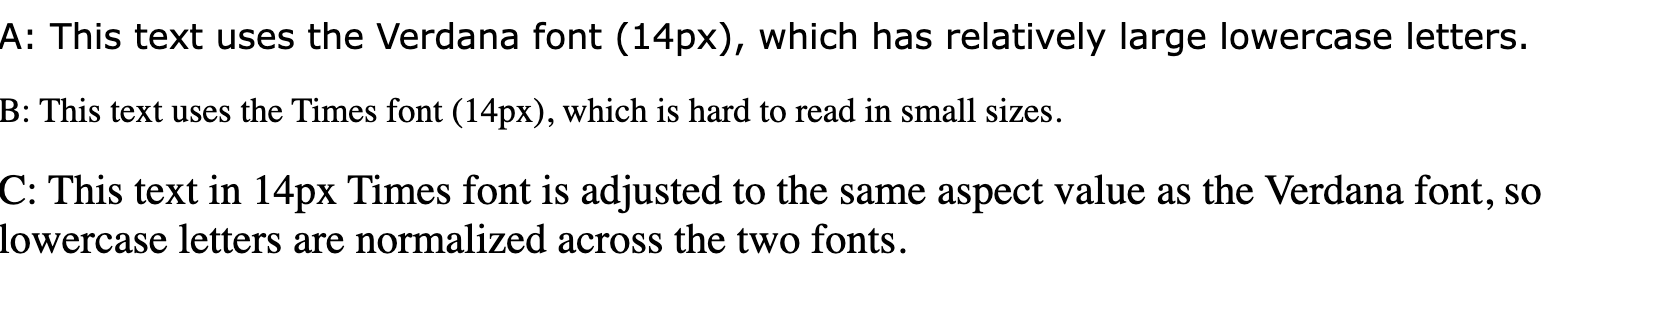 显示以下内容的文字行：“此文本使用 verdana 字体 (14px)，该字体包含相对大的小写字母”“This using Times font (14px)”（此字体在较小的尺寸下难以阅读）和“此文本采用 14px Times 字体调整到与 Verdana 字体相同的纵横比值，因此两种字体对小写字体进行了标准化